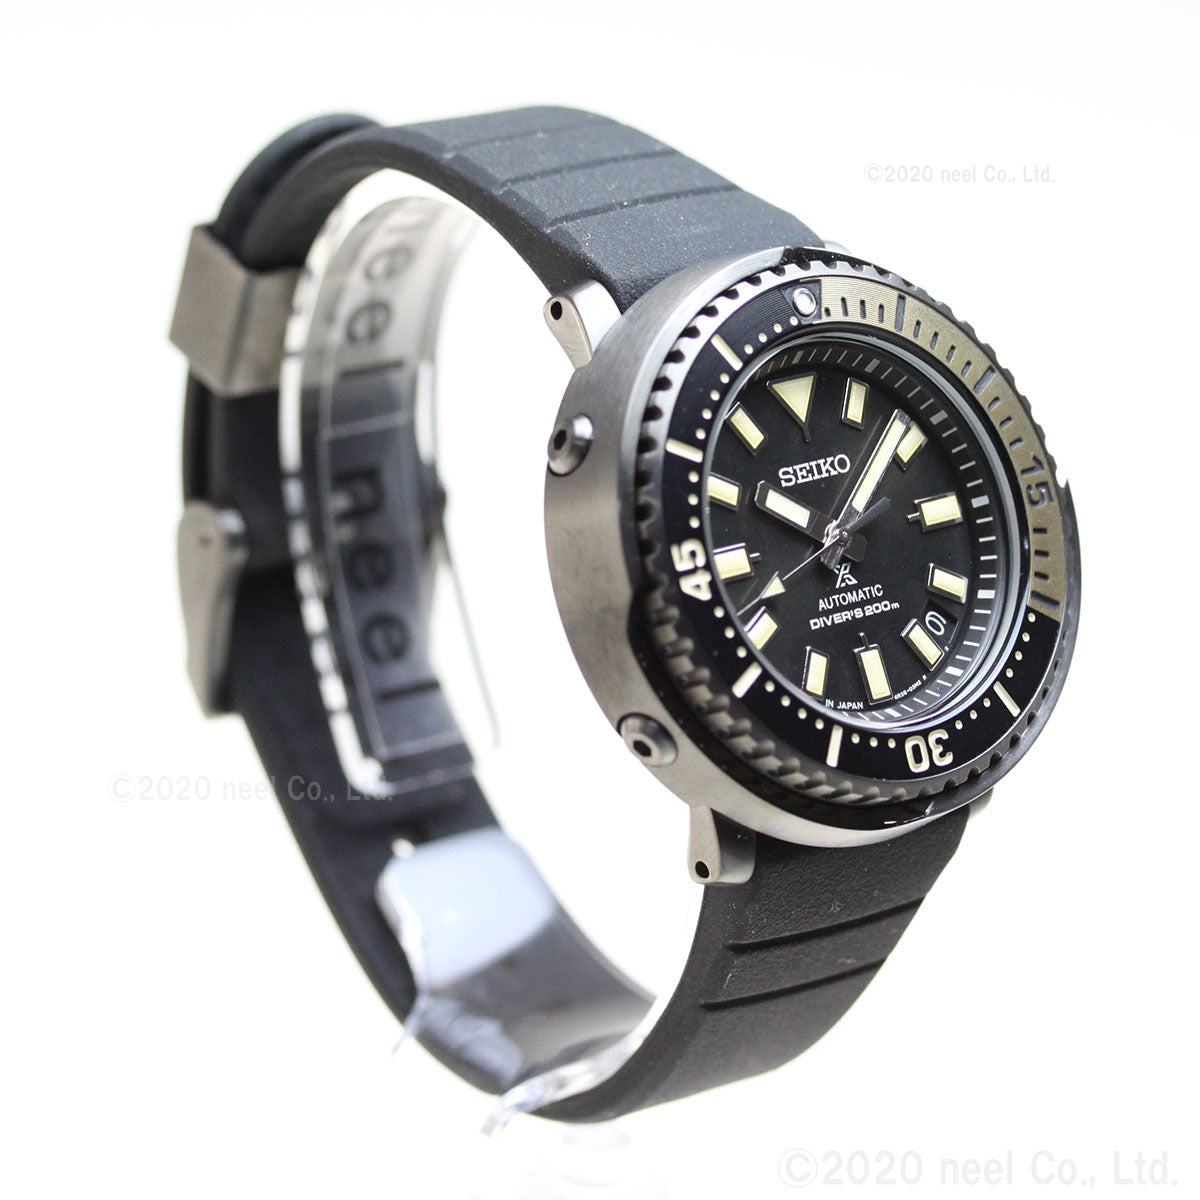 SEIKO セイコー 時計 SBDY091 ロスペックス ダイバー スキューバ ストリート シリーズ 自動巻き オートマチック 腕時計 ウォッチ ブラック系